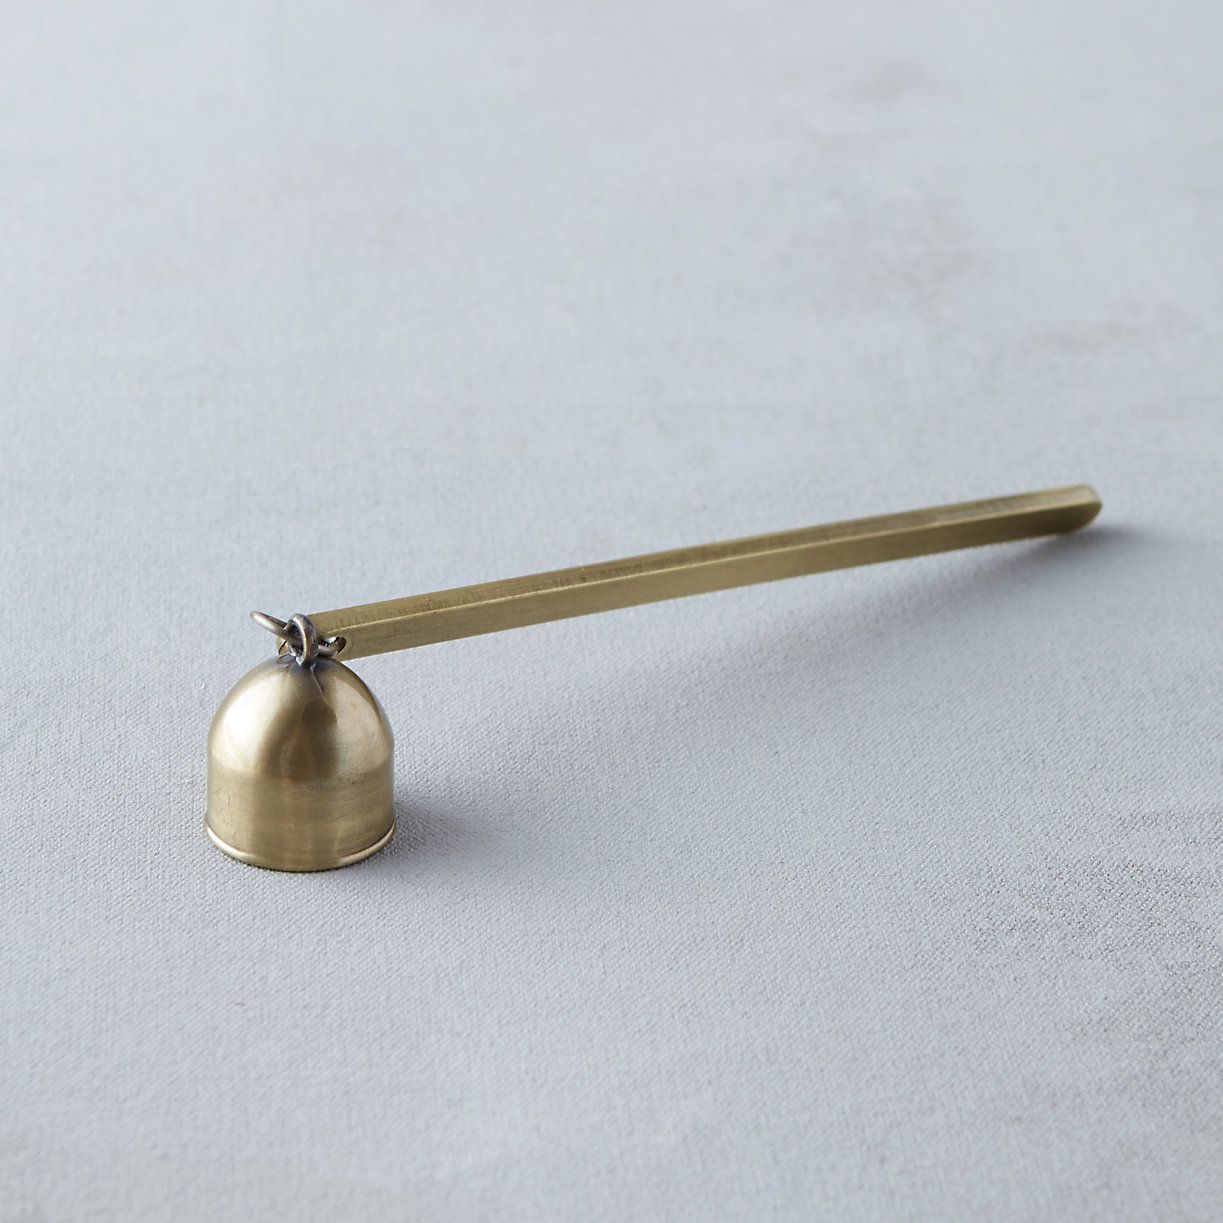 Antique Brass Bell Snuffer